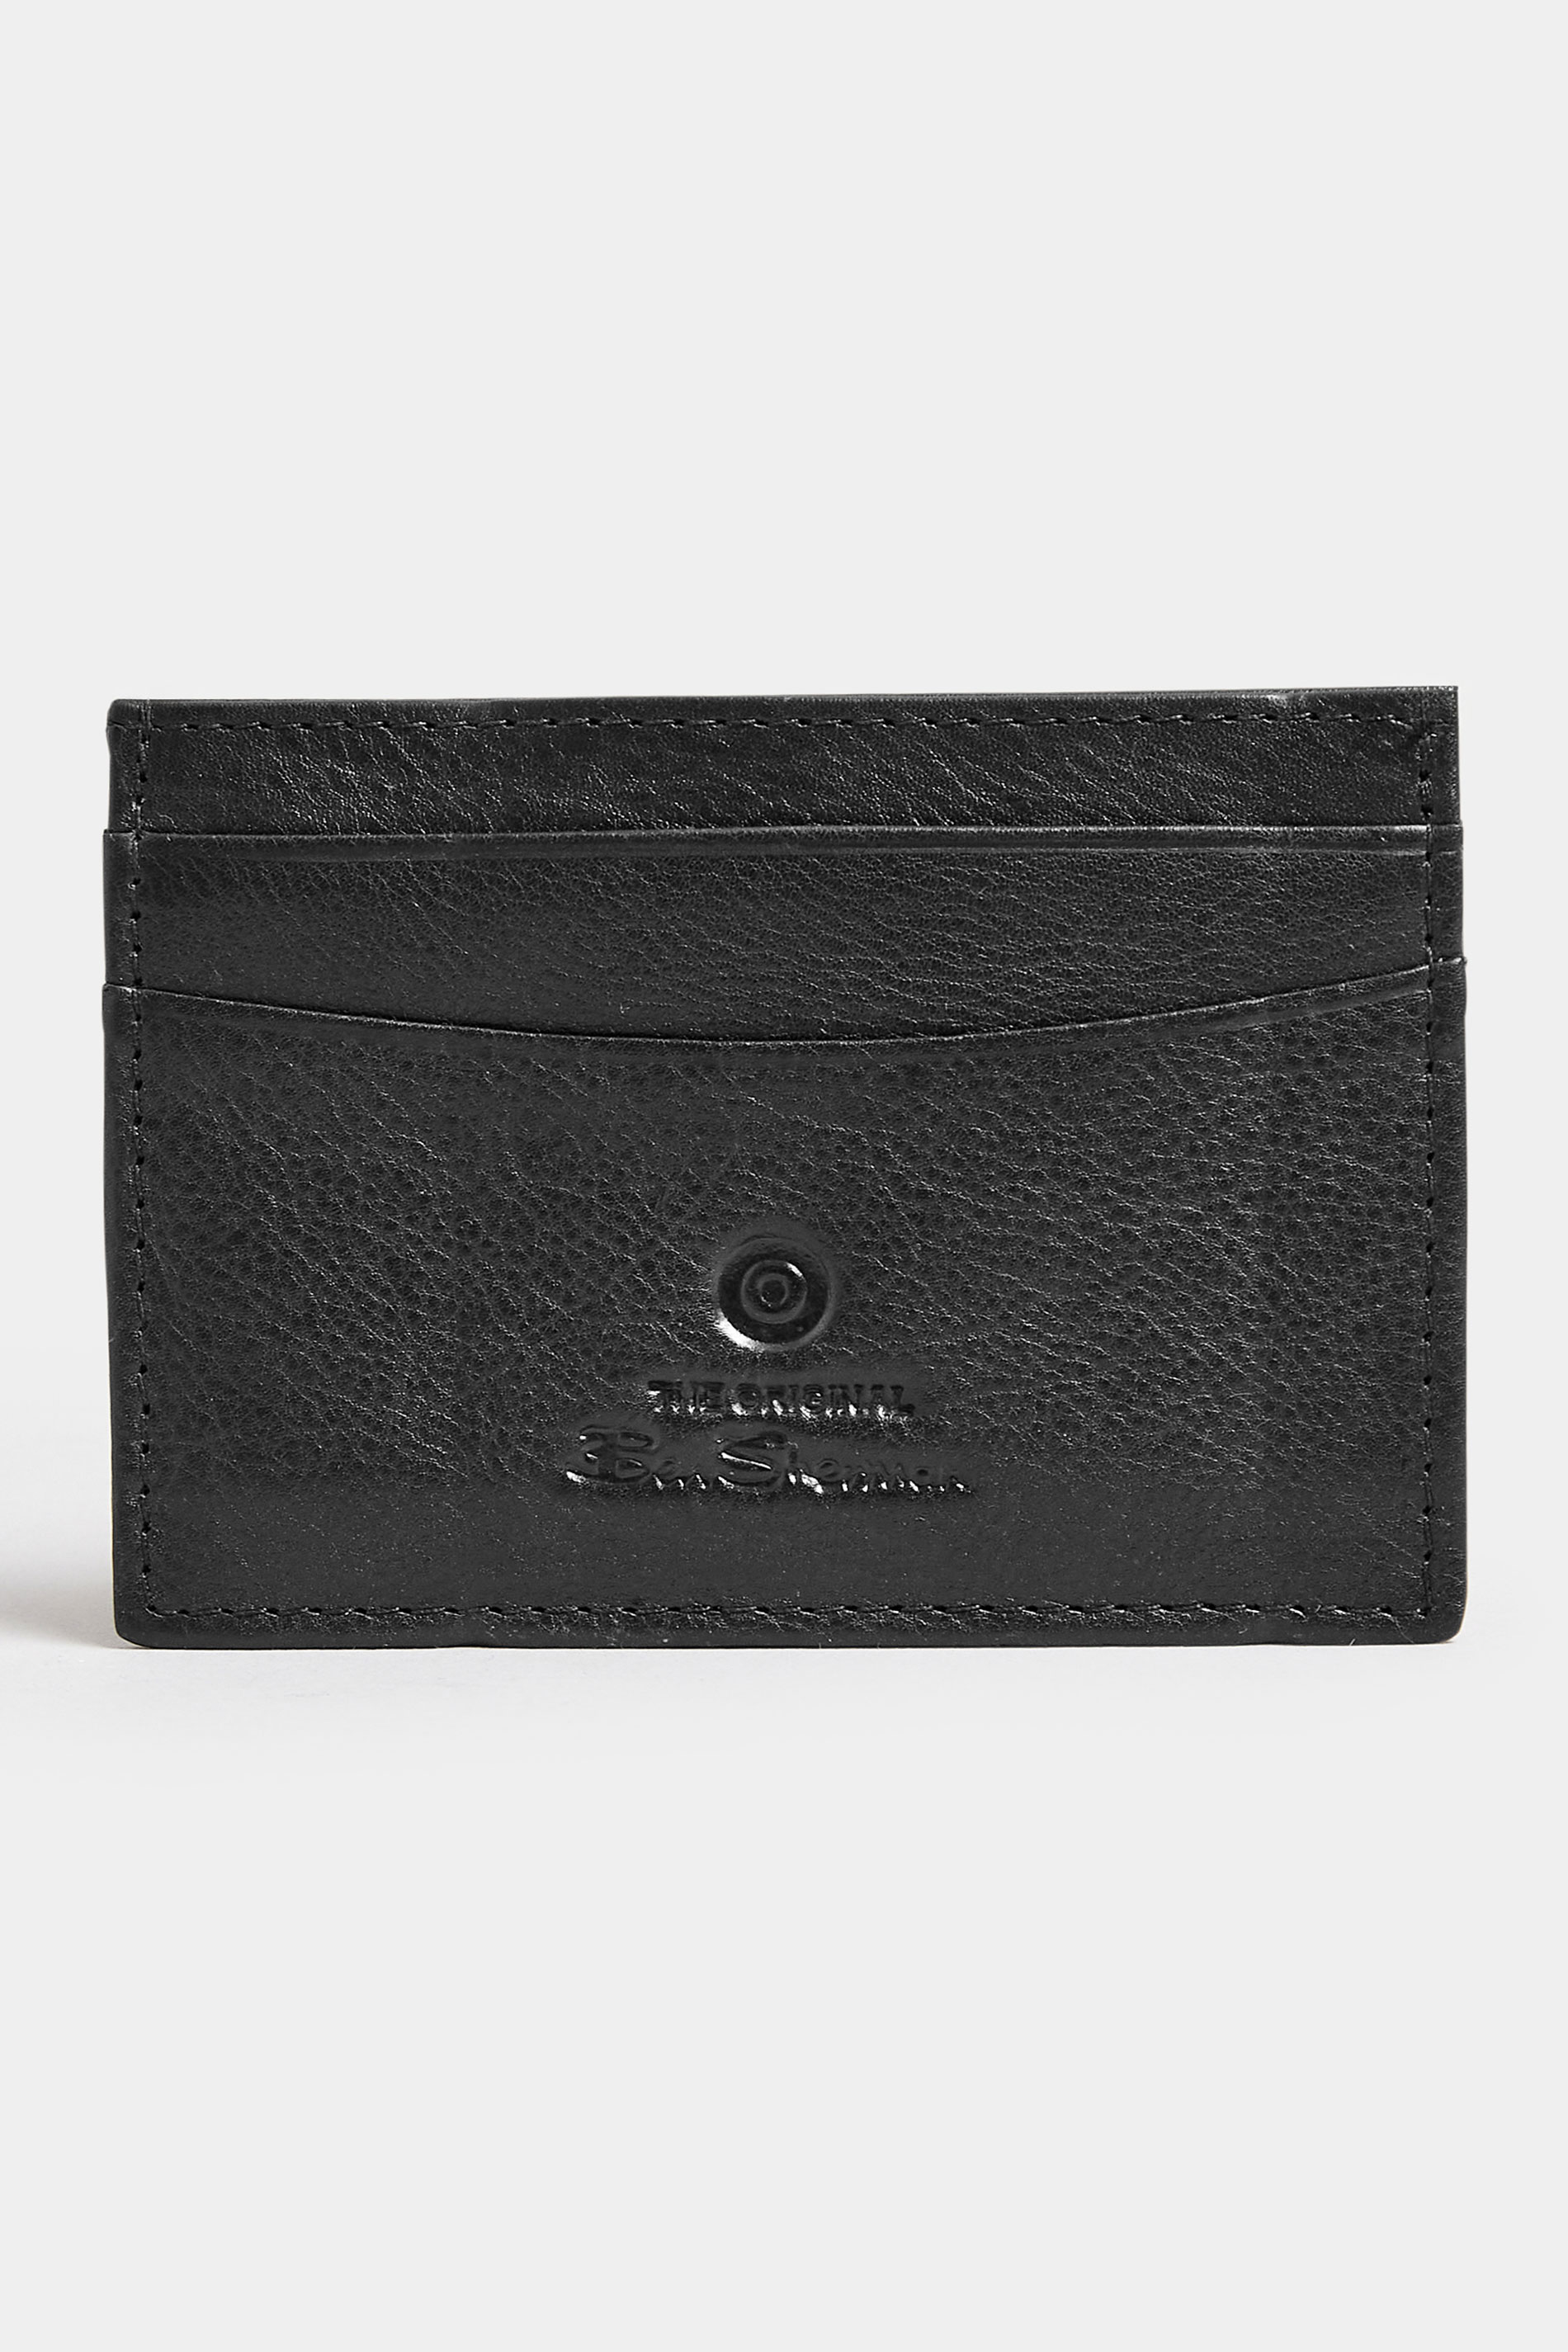 BEN SHERMAN Black Leather 'Koki' Cardholder | BadRhino 2